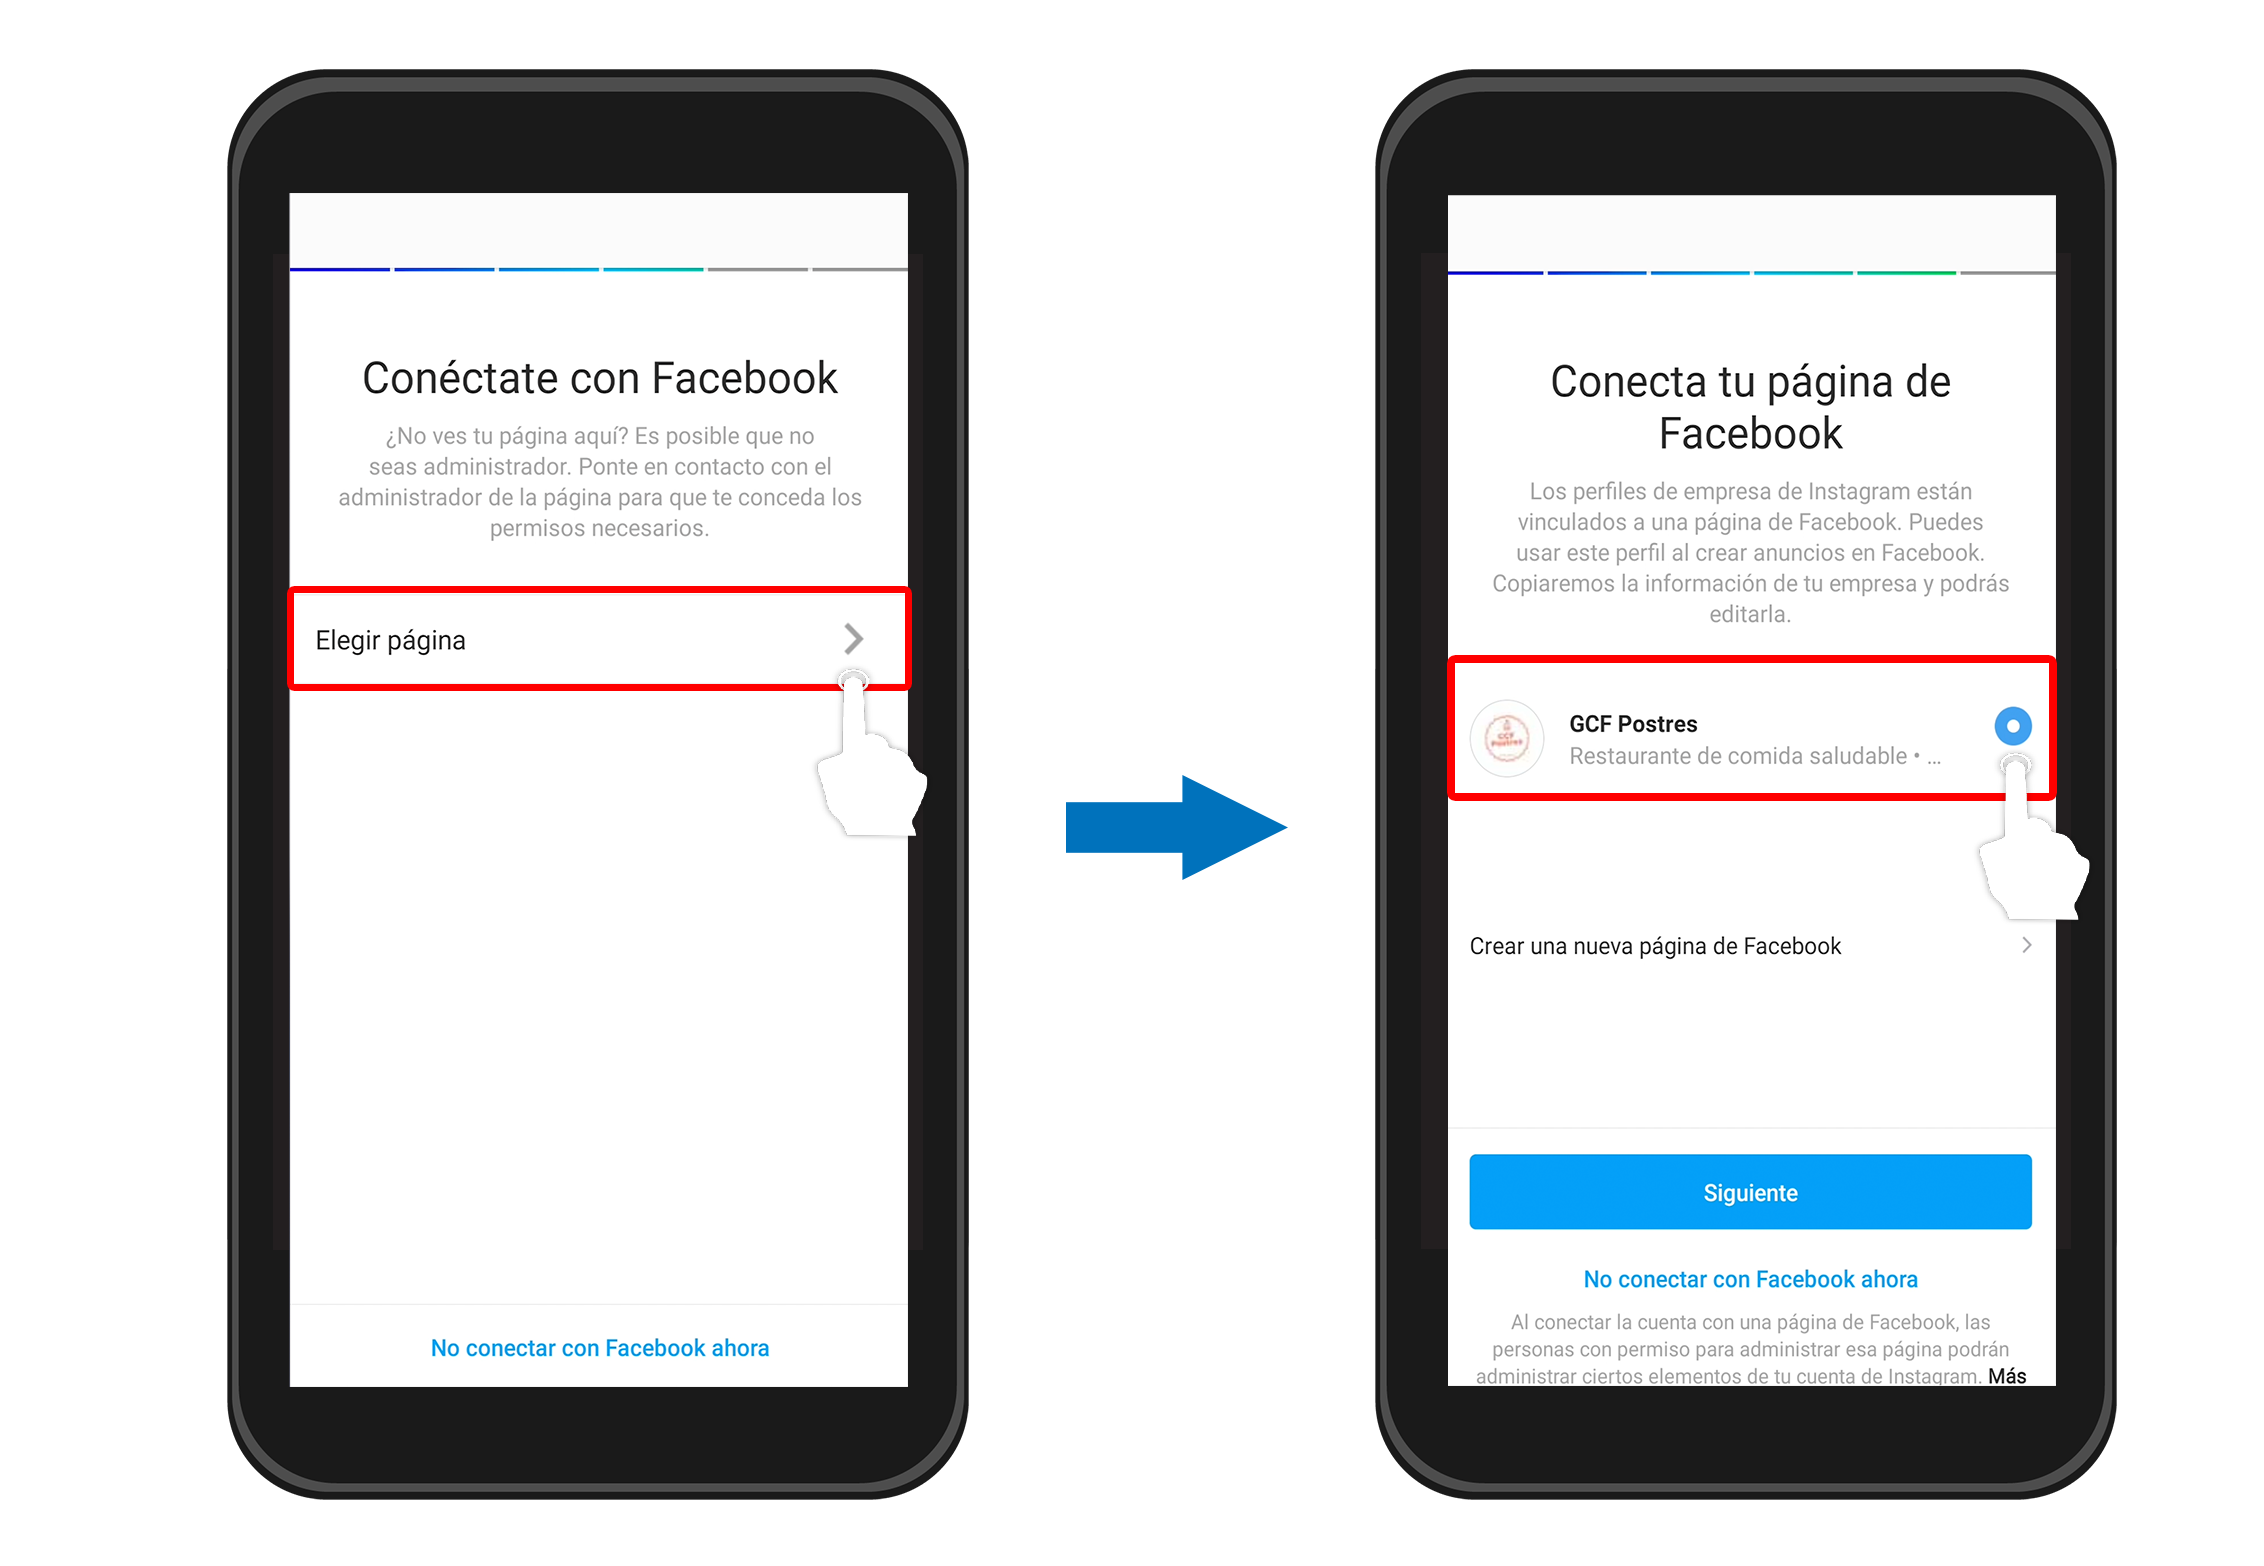 Si ya tienes una página de negocios en Facebook podrás añadirla en la opción Elegir página. Esta herramienta vinculará tu cuenta de Facebook con Instagram y podrás utilizar los beneficios que tienen estas apps para negocios.